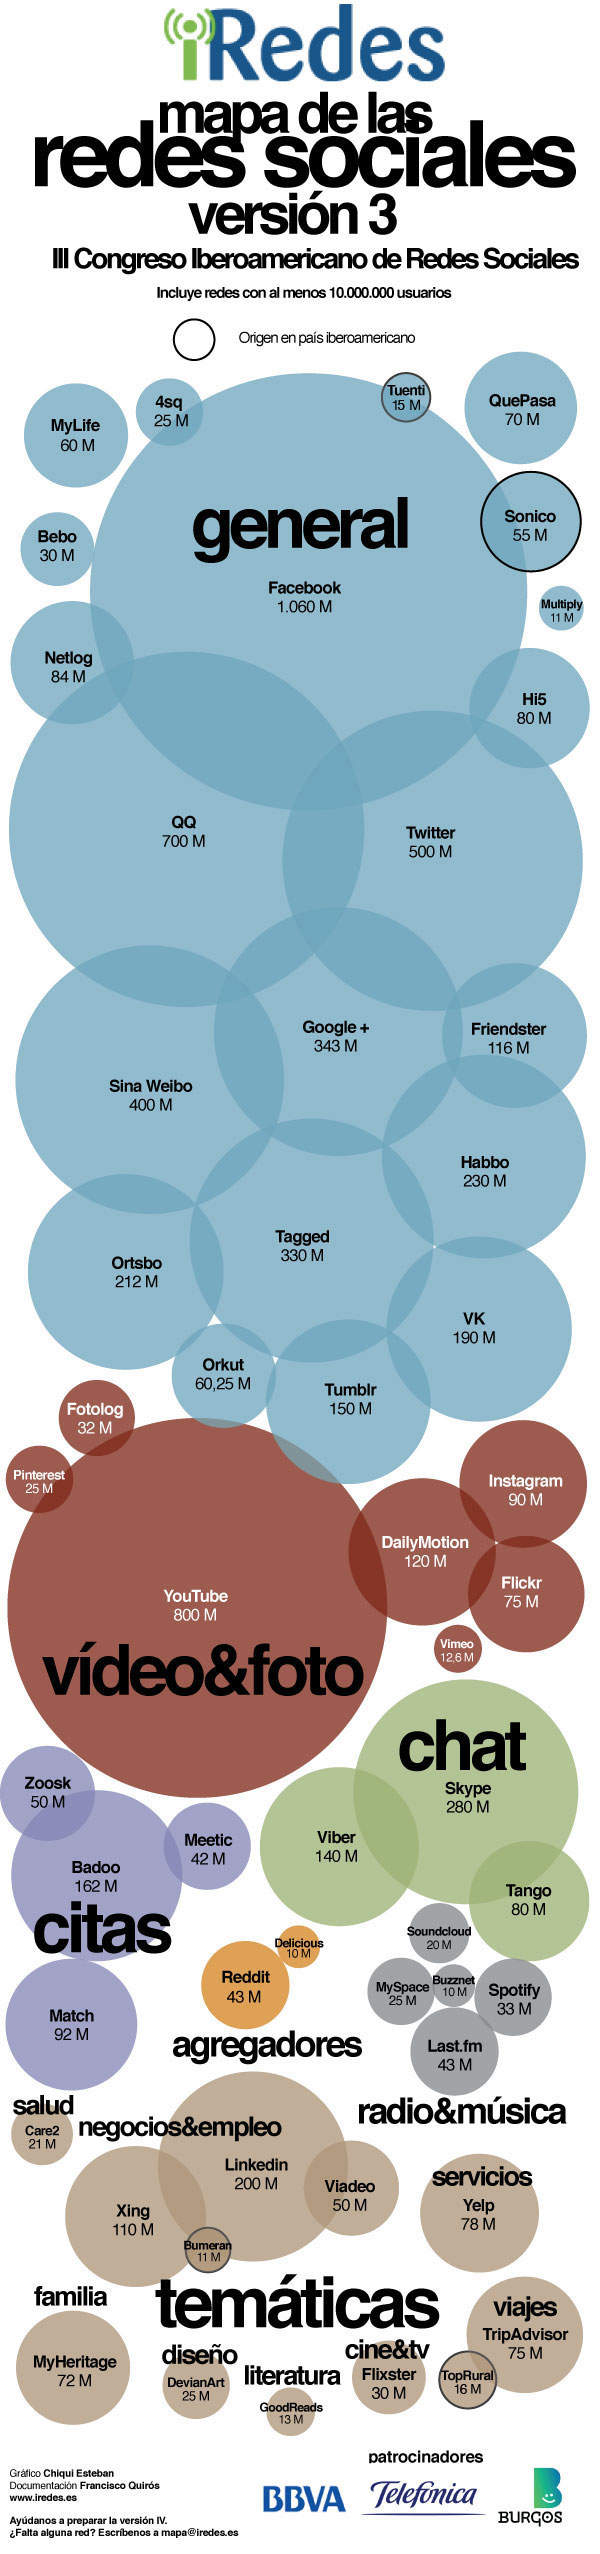 Mapa de las redes sociales en el 2013